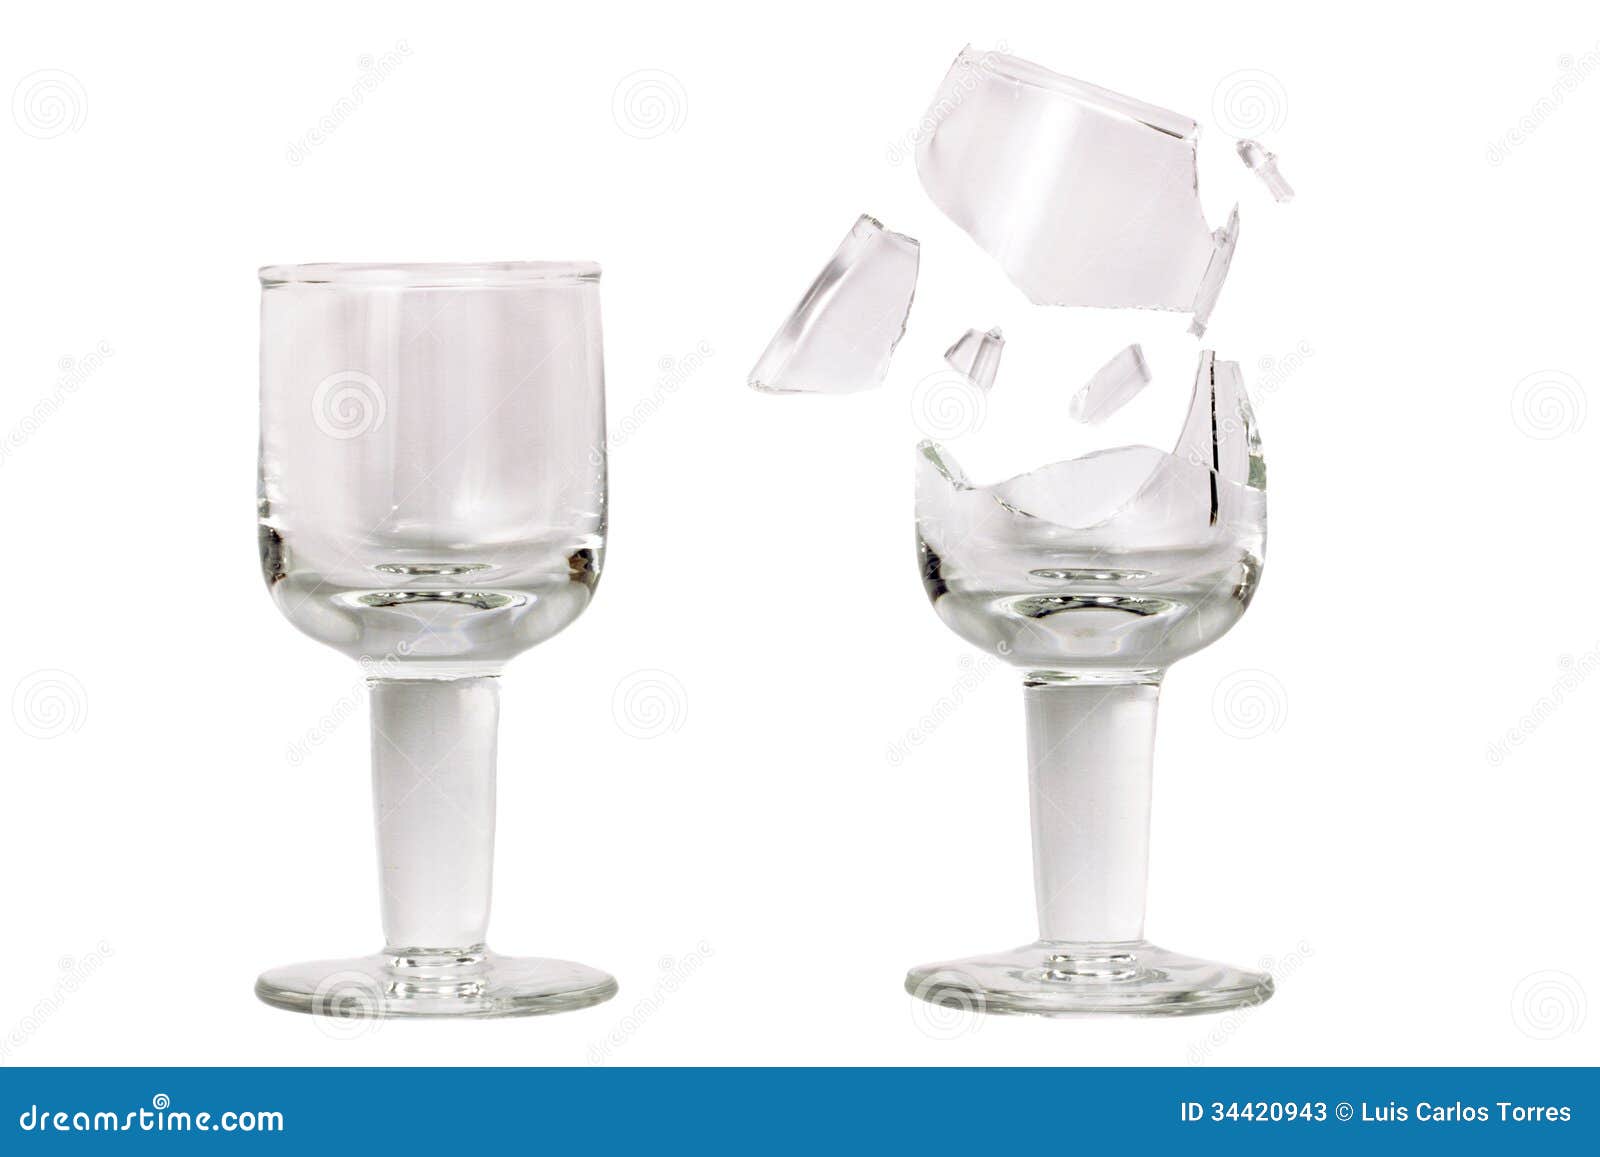 抠玻璃，抠透明红酒酒杯教程(4) - 抠透明物 - PS教程自学网